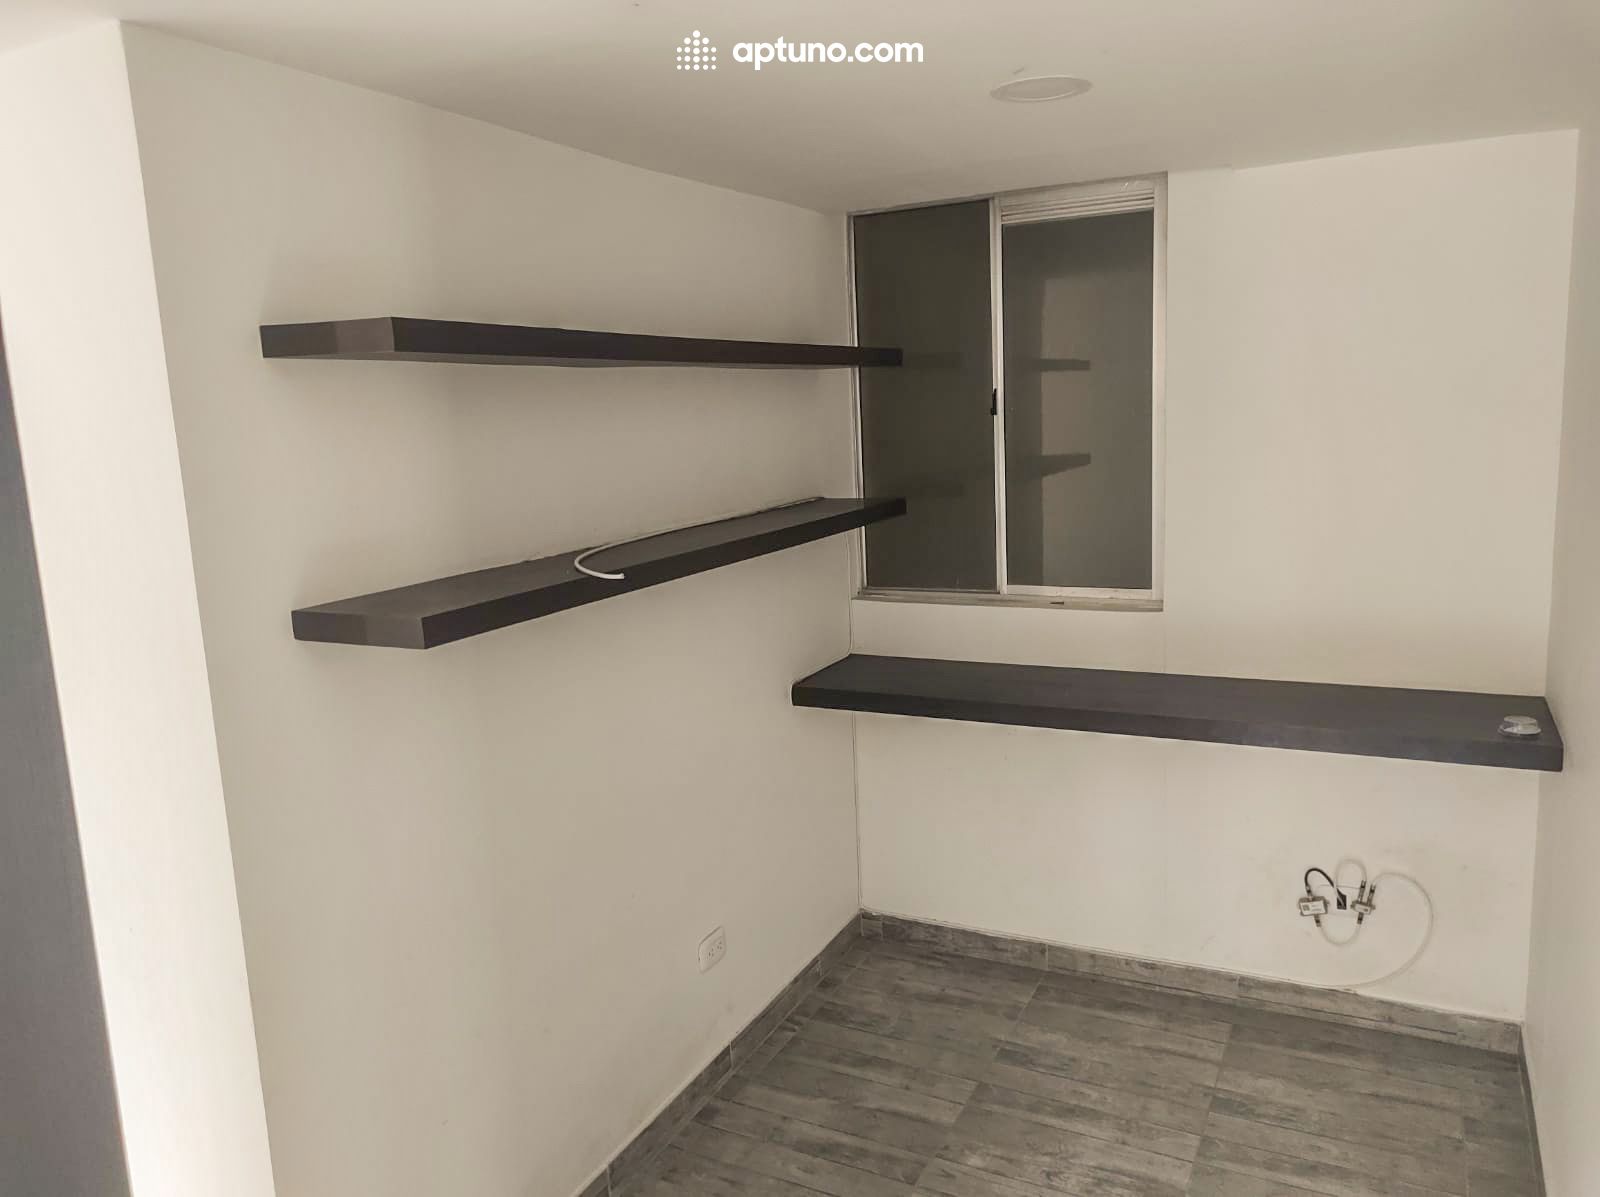 Apartamento en arriendo Madrid 64 m² - $ 800.000,00